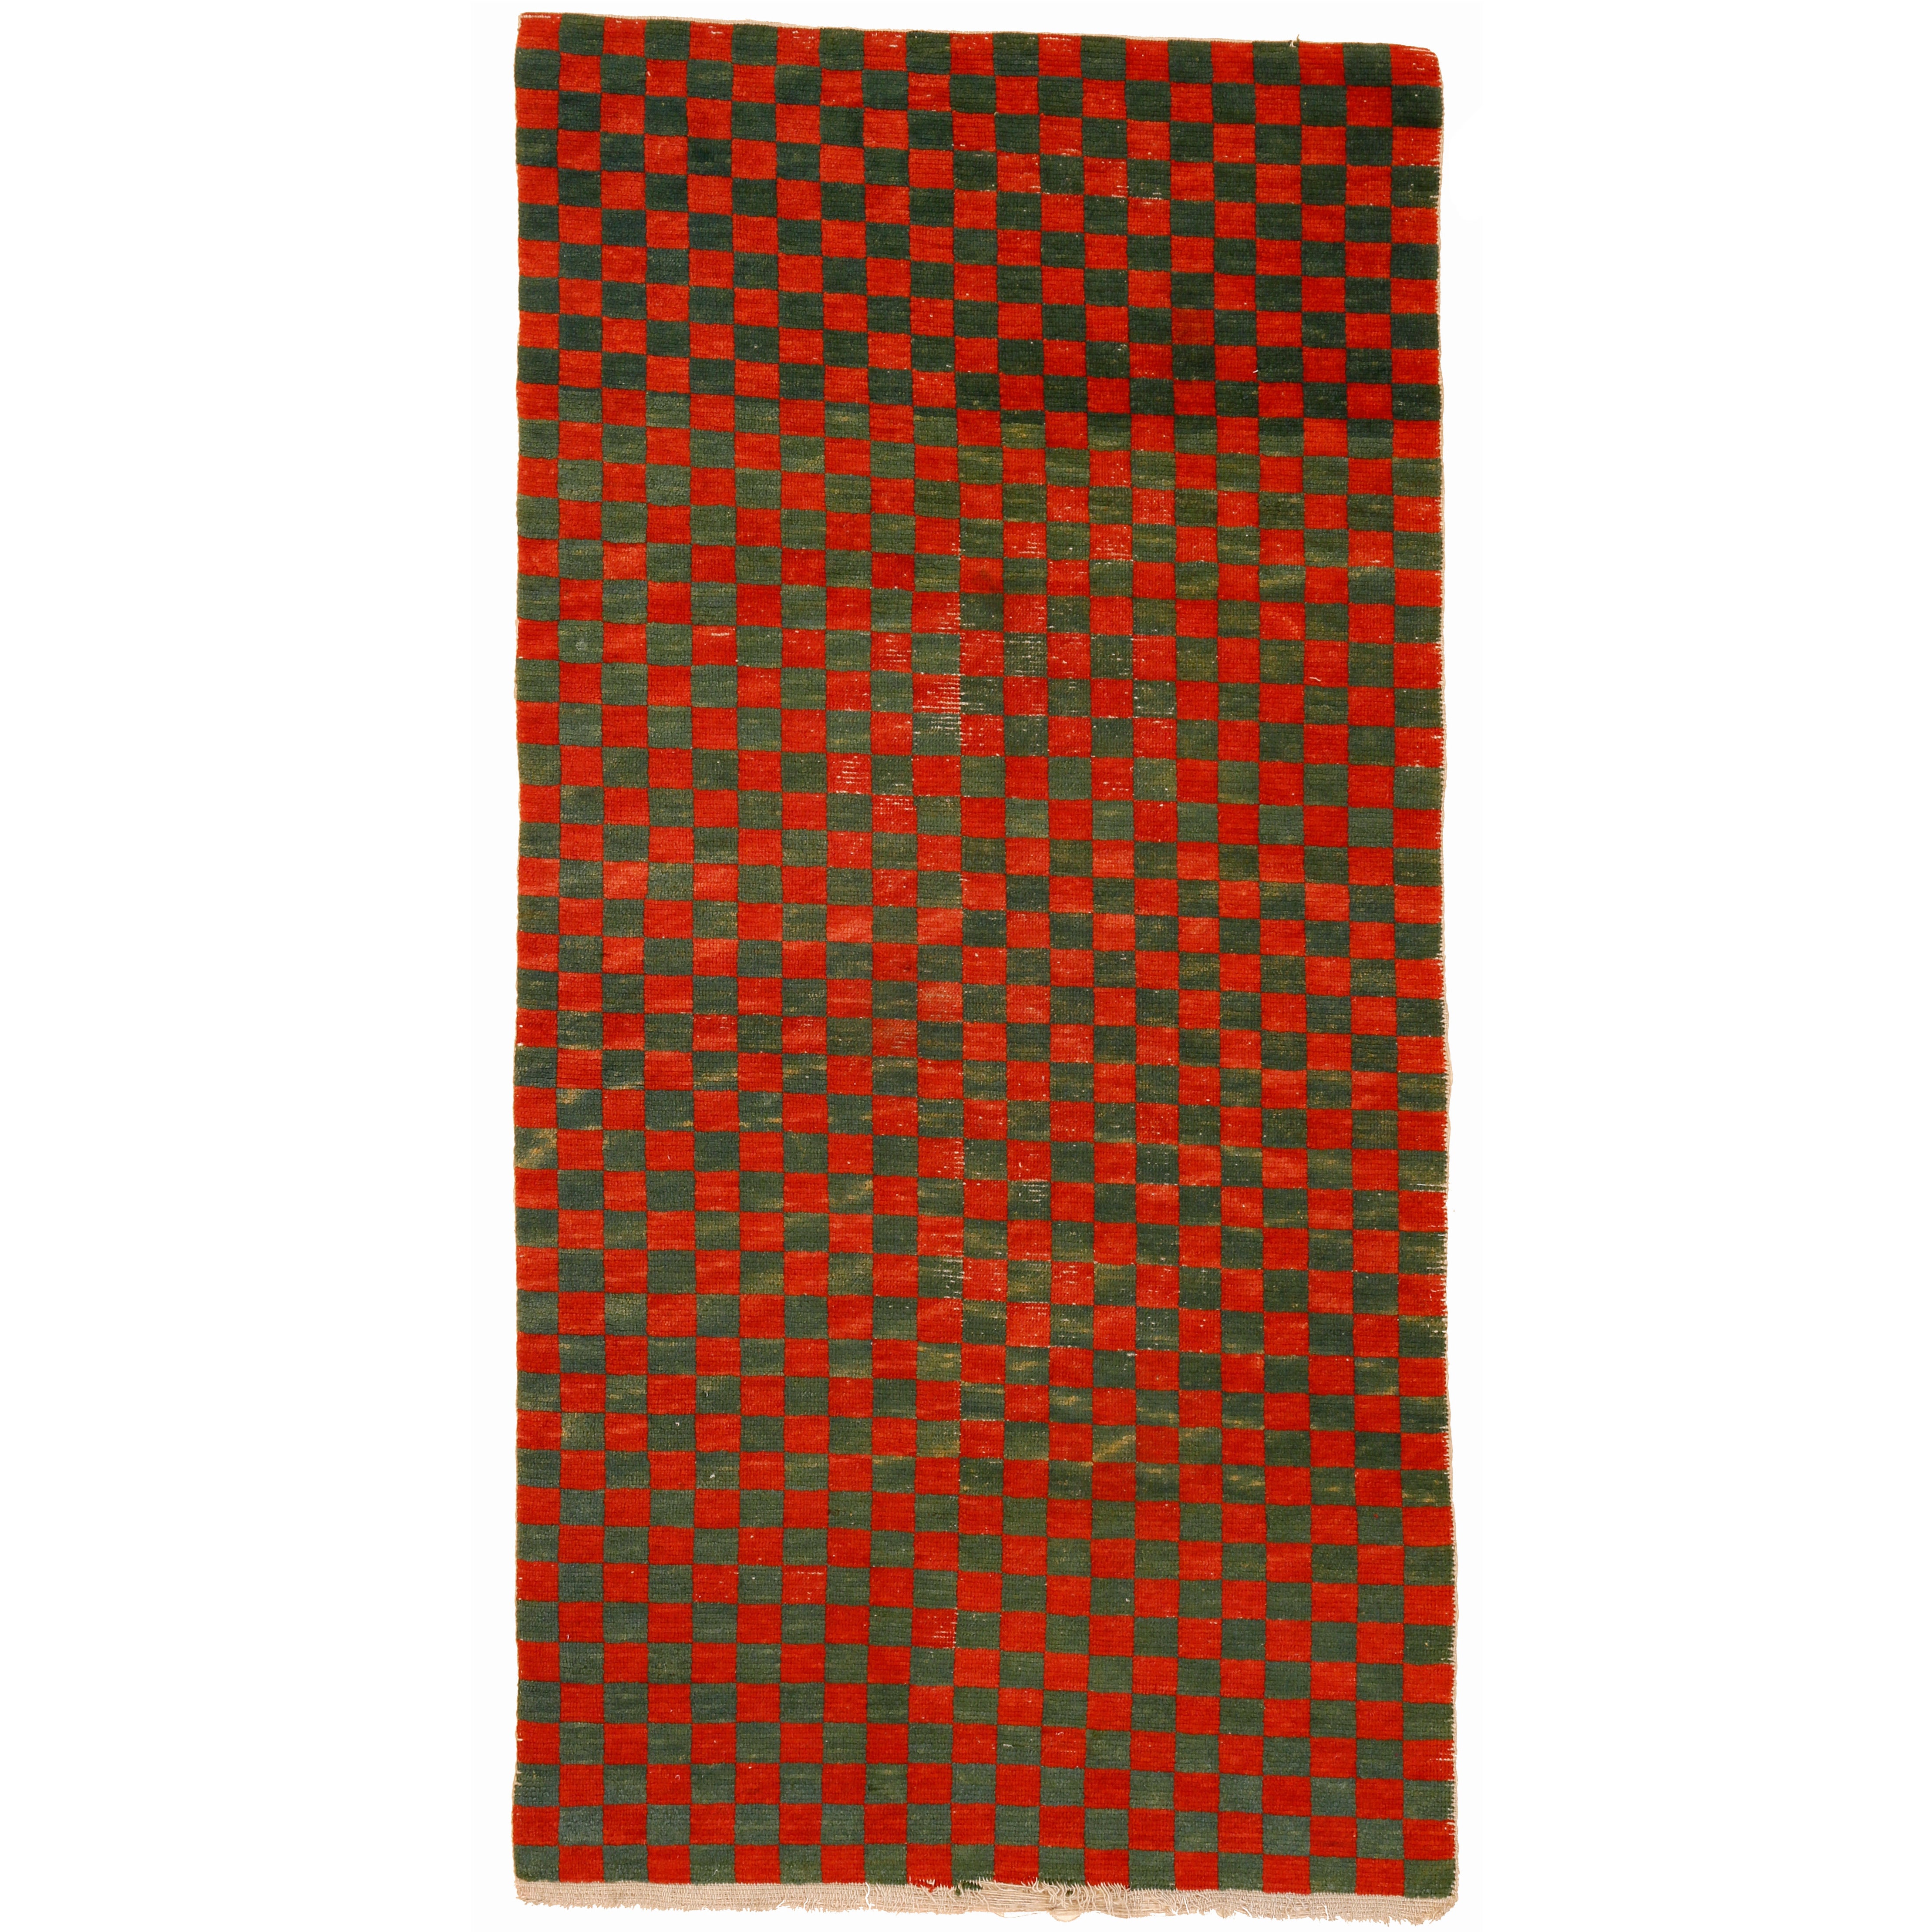 Tibetan Khaden with Chequerboard Pattern